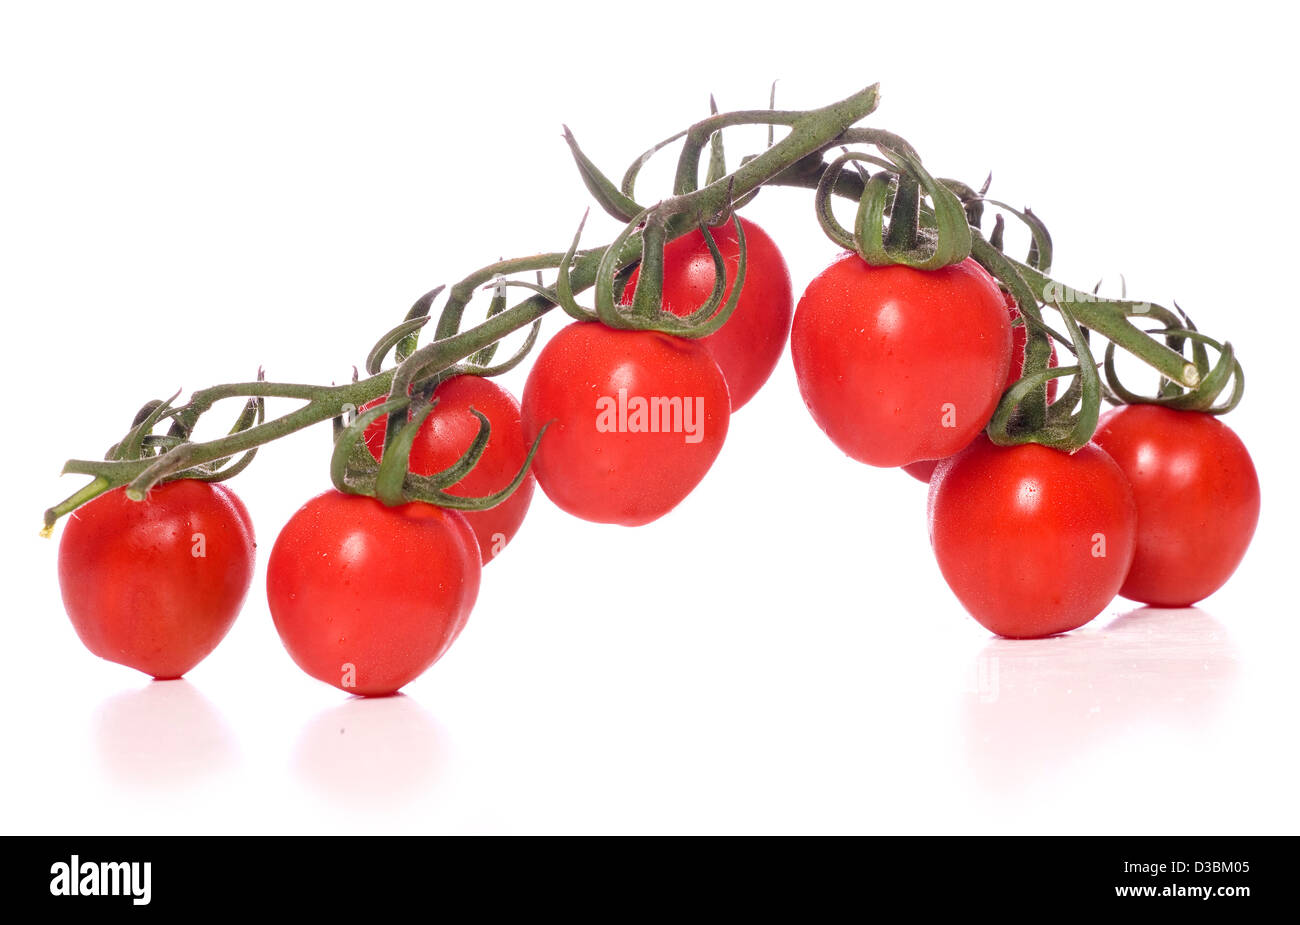 Les tomates de vigne sur fond blanc Banque D'Images